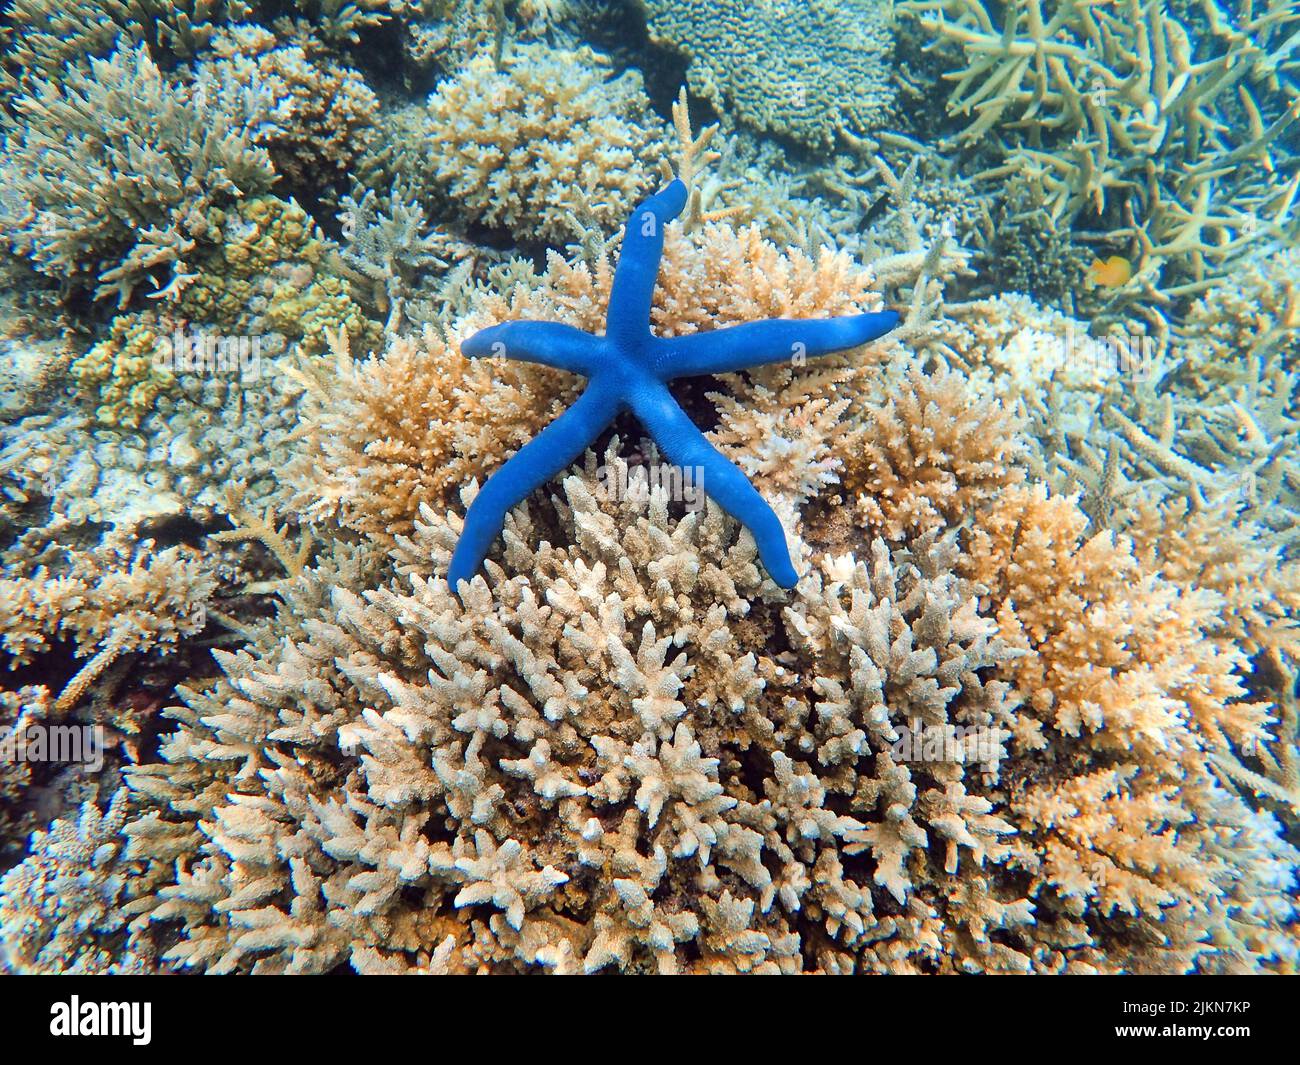 Indonesia Islas Anambas - Arrecife de coral con estrella azul del mar - Linckia laevigata Foto de stock